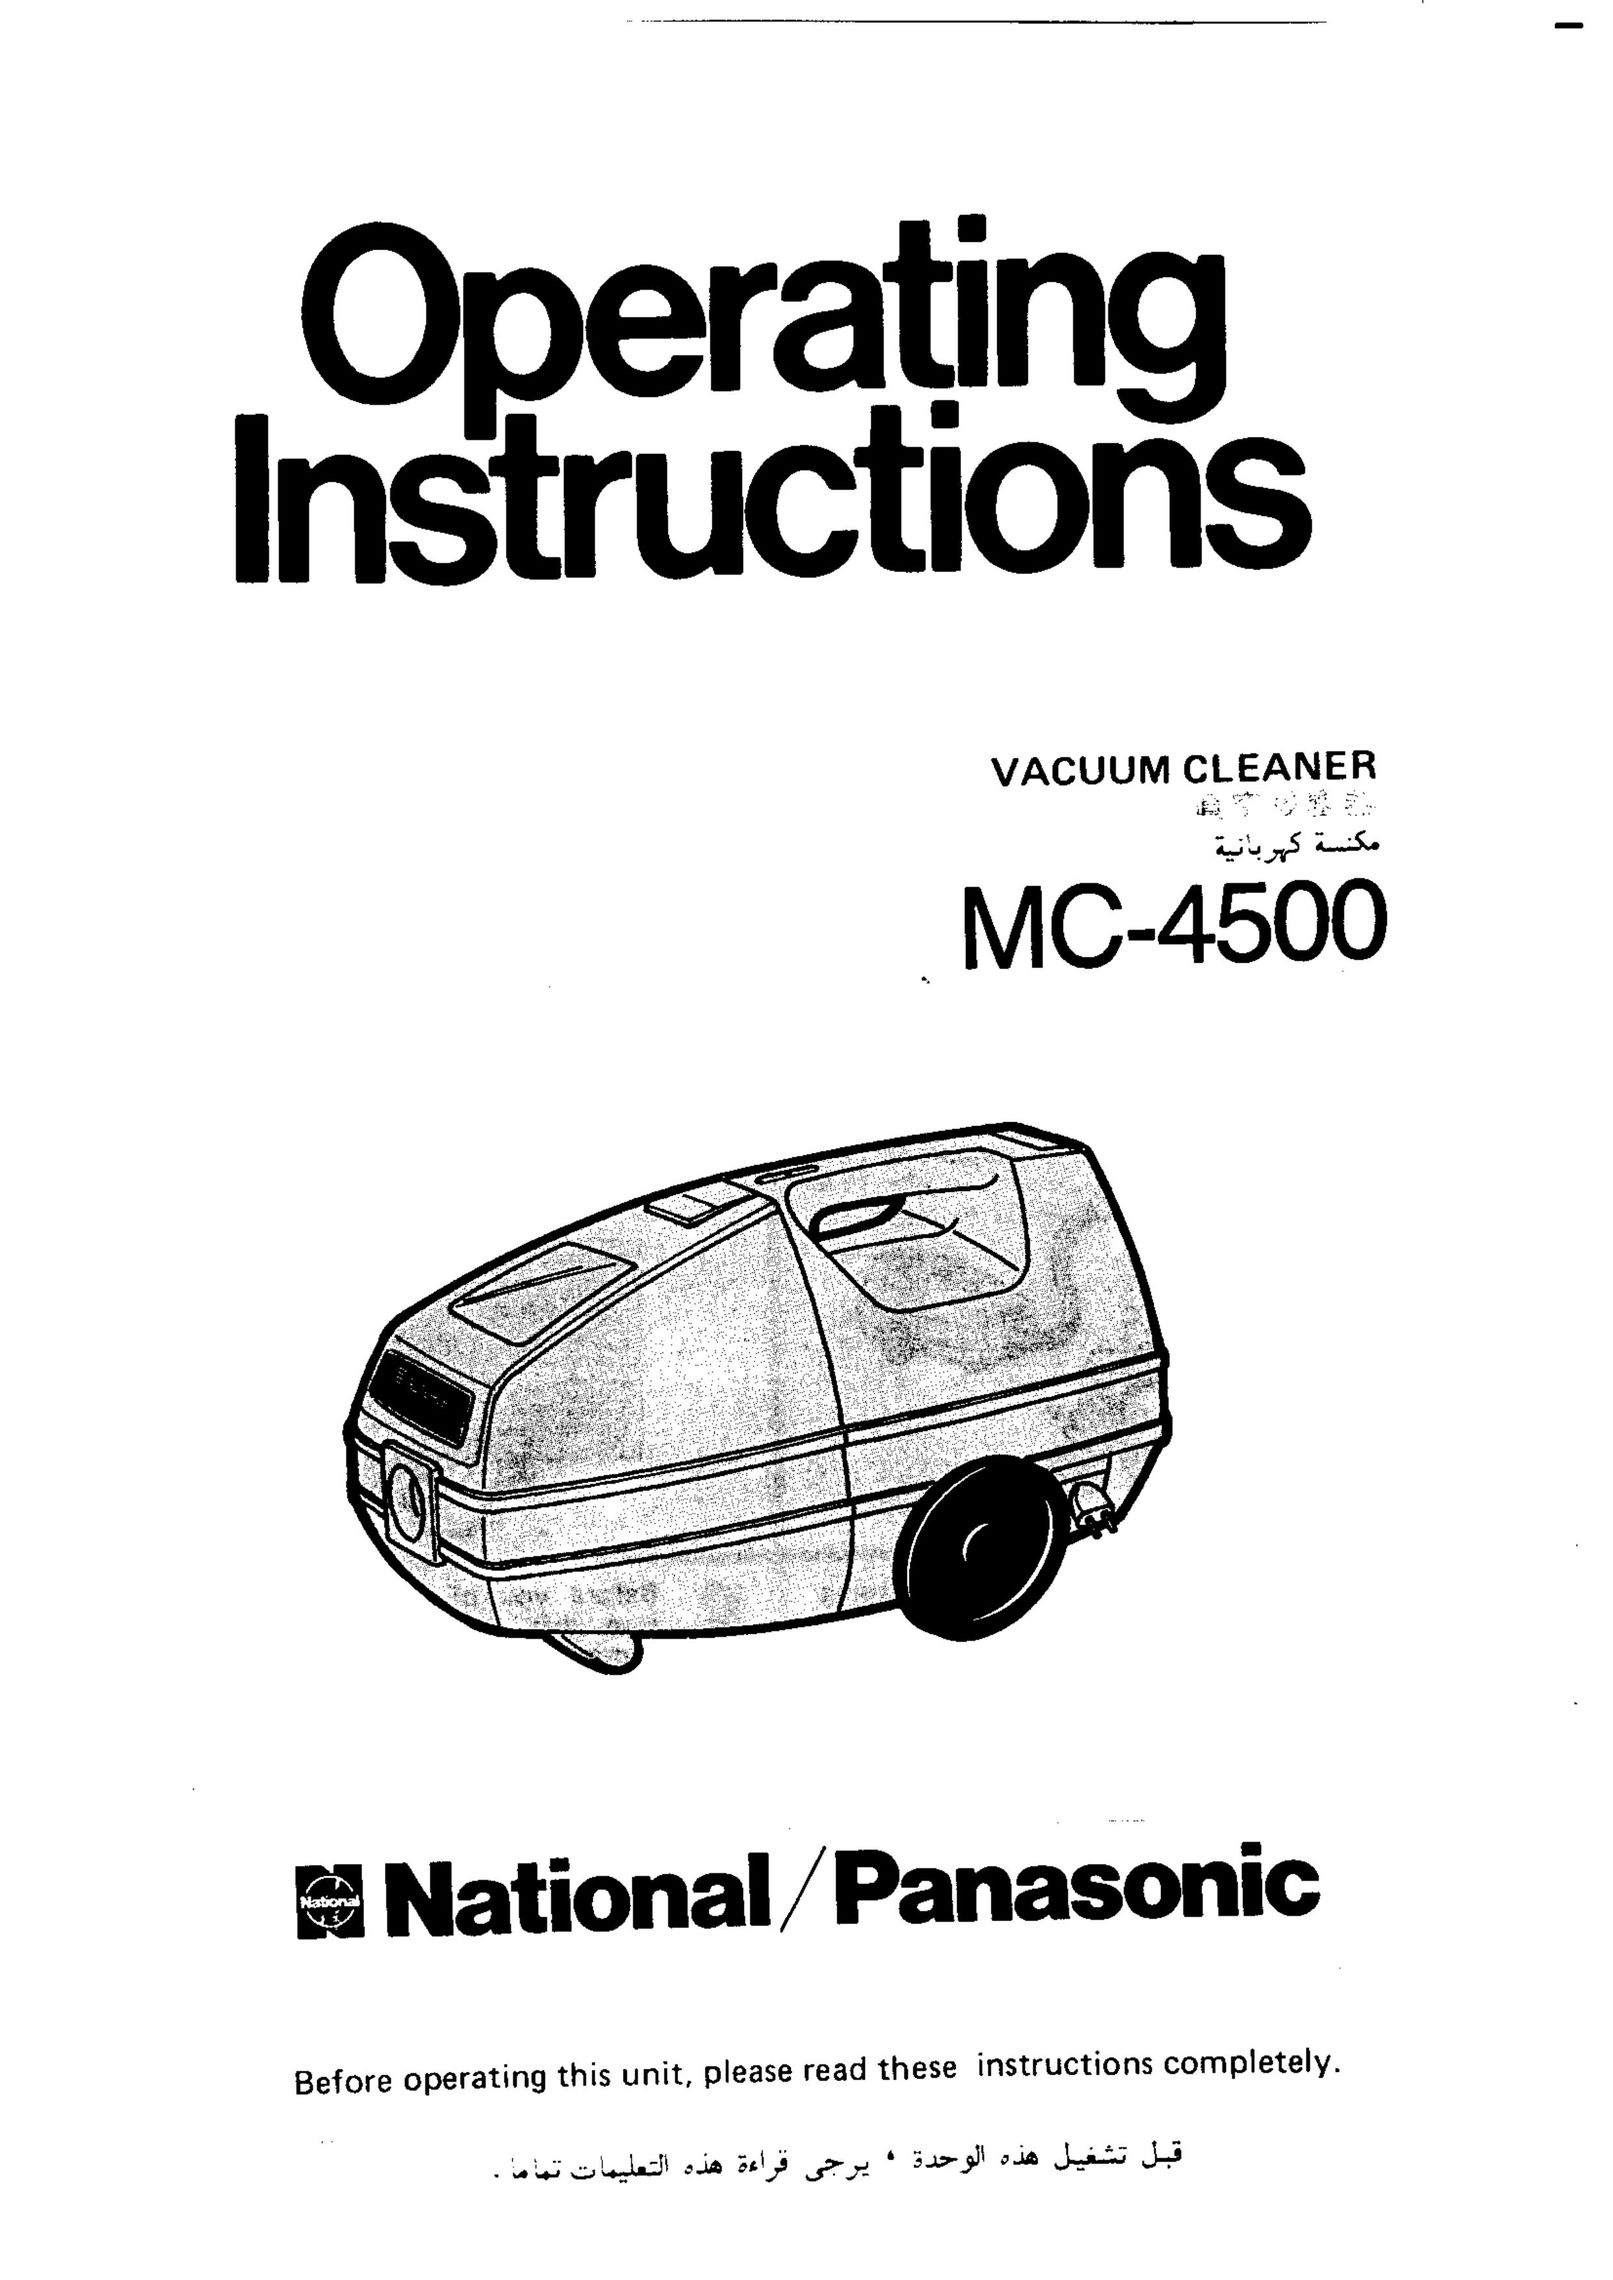 Panasonic MC-4500 Vacuum Cleaner User Manual